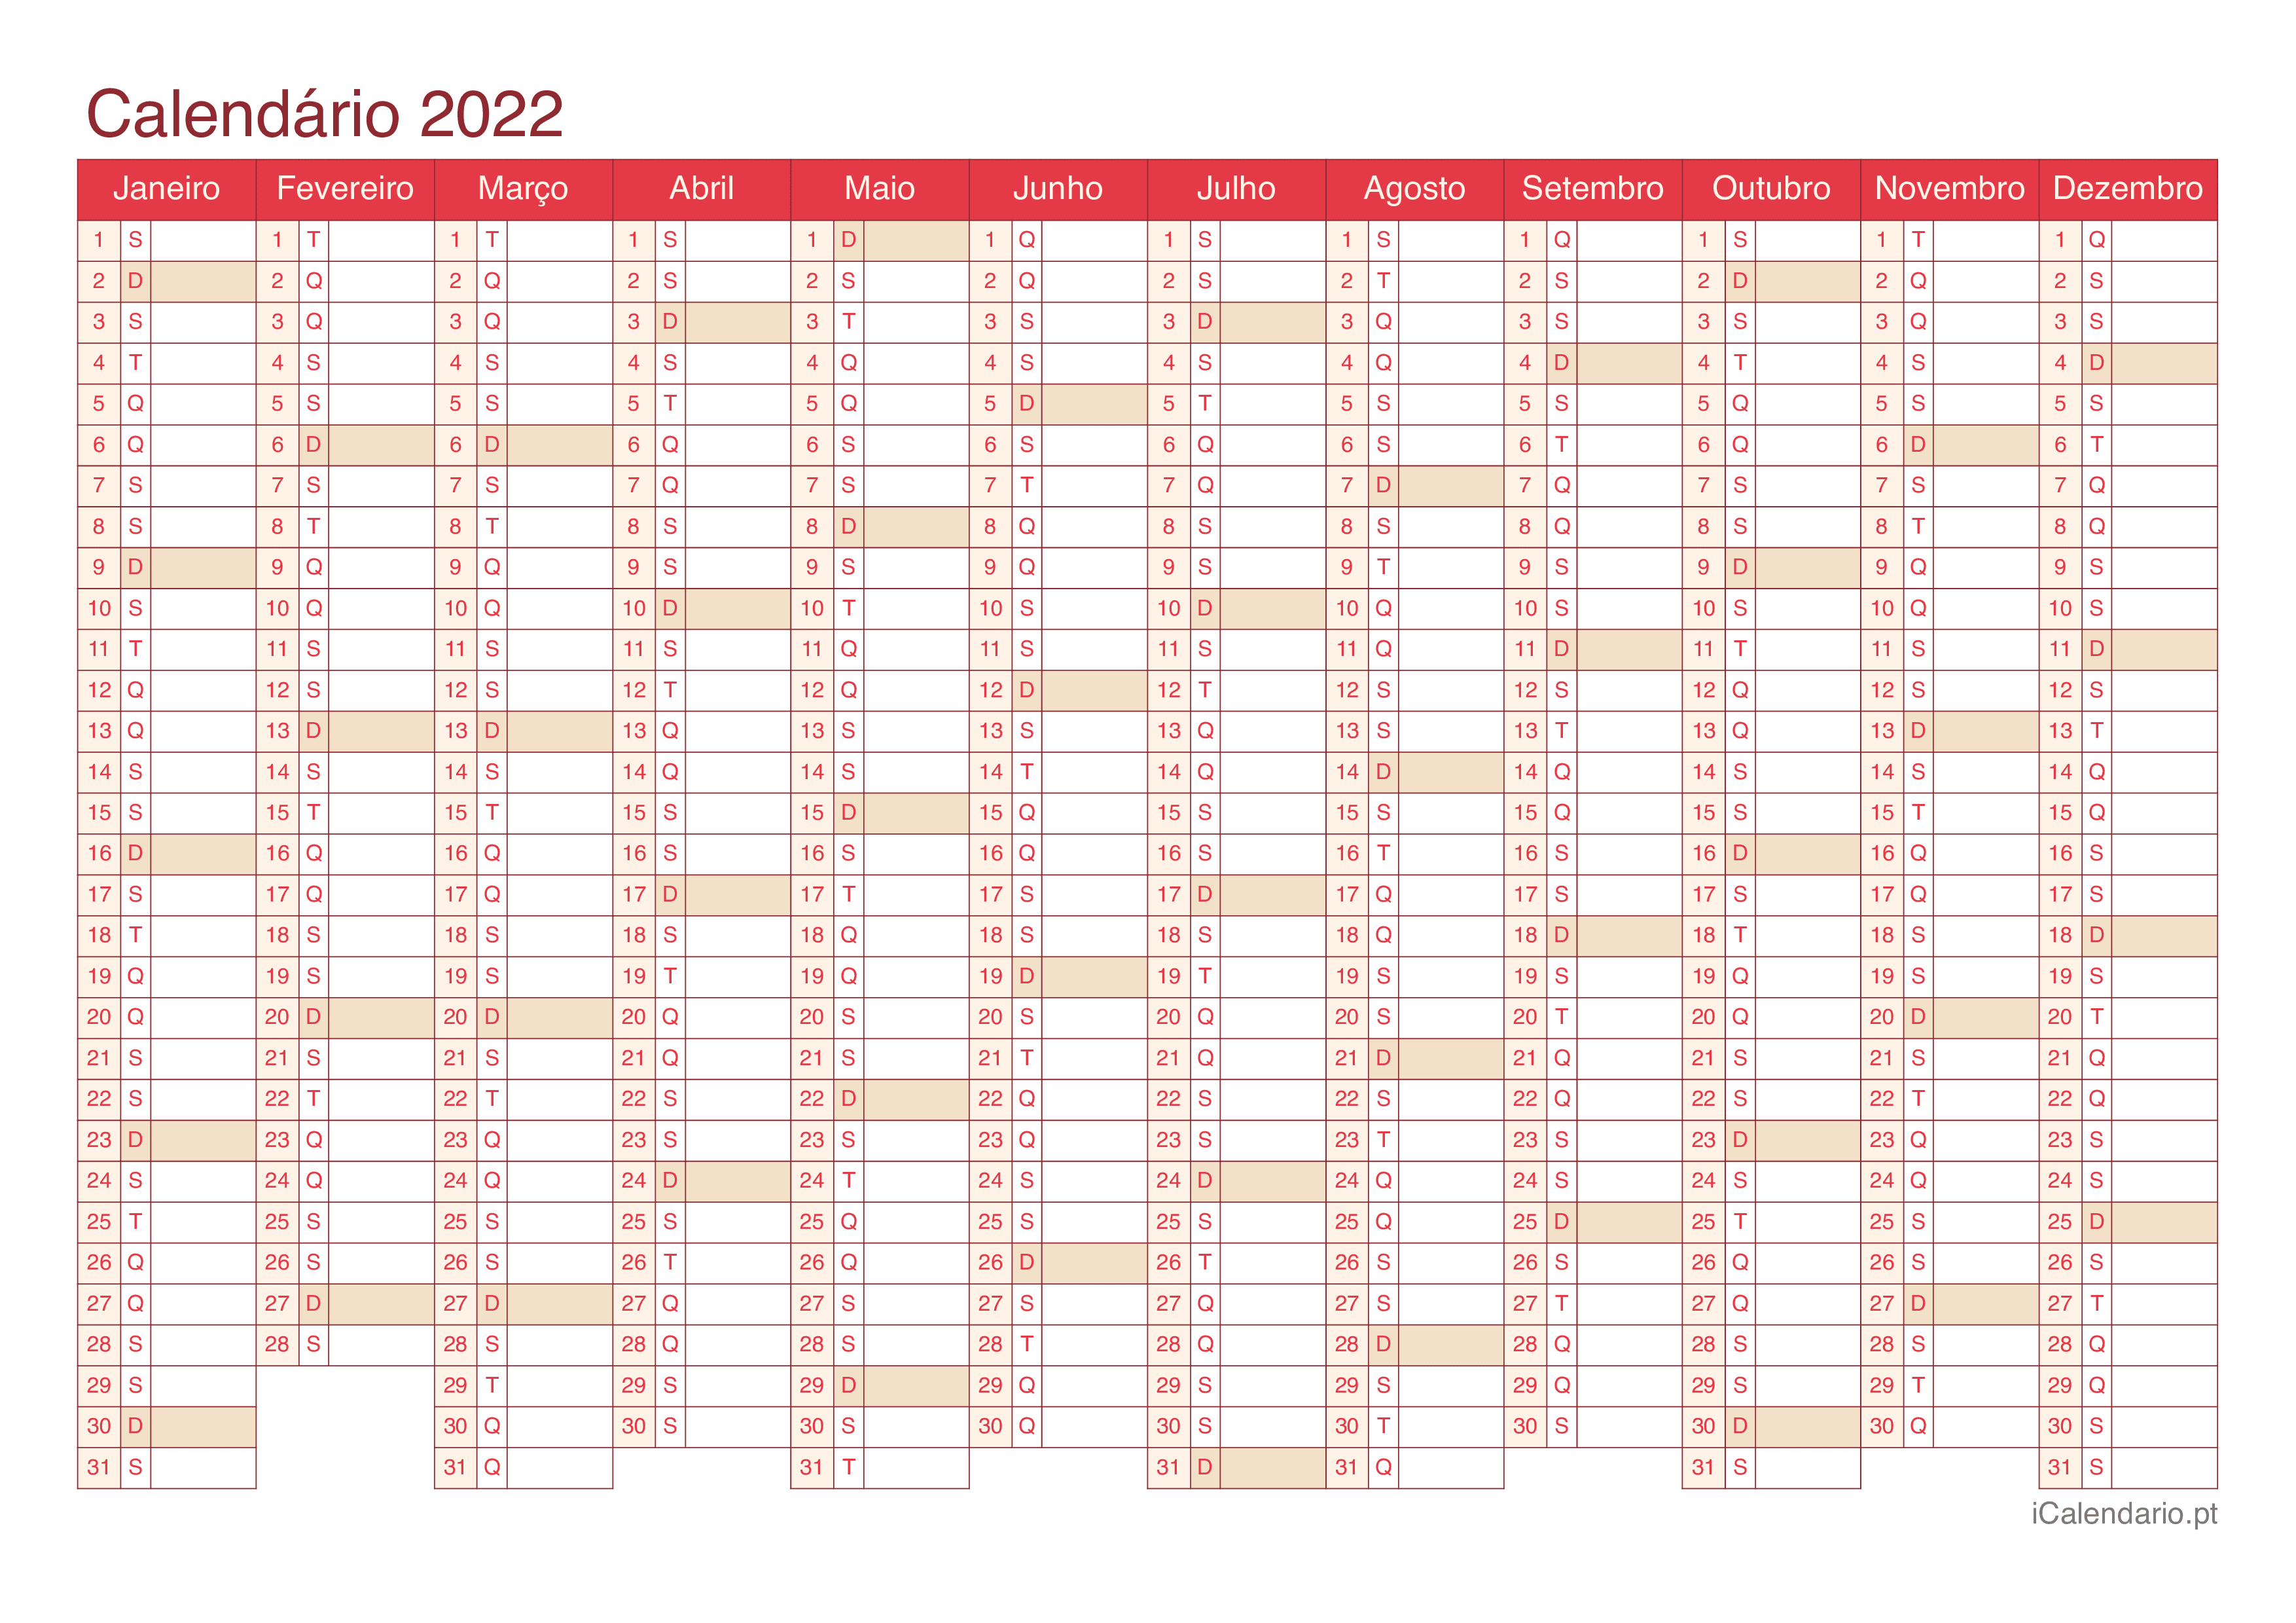 Calendário 2022 - Cherry